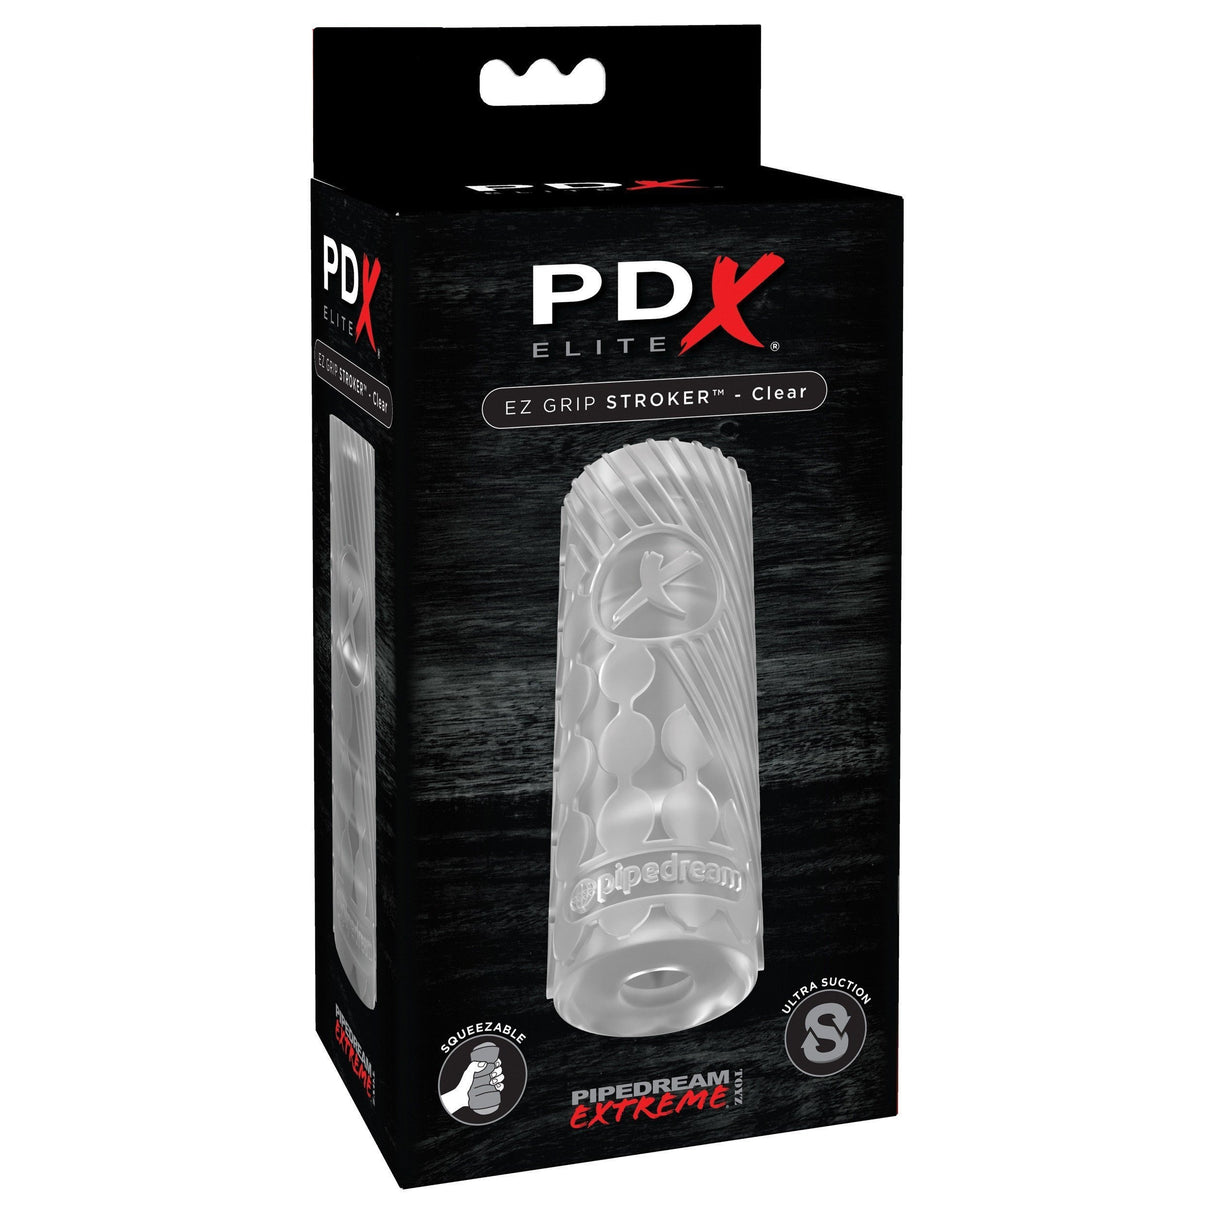 Pipedream - PDX Elite EZ Grip Stroker Masturbator (Clear) PD1577 CherryAffairs